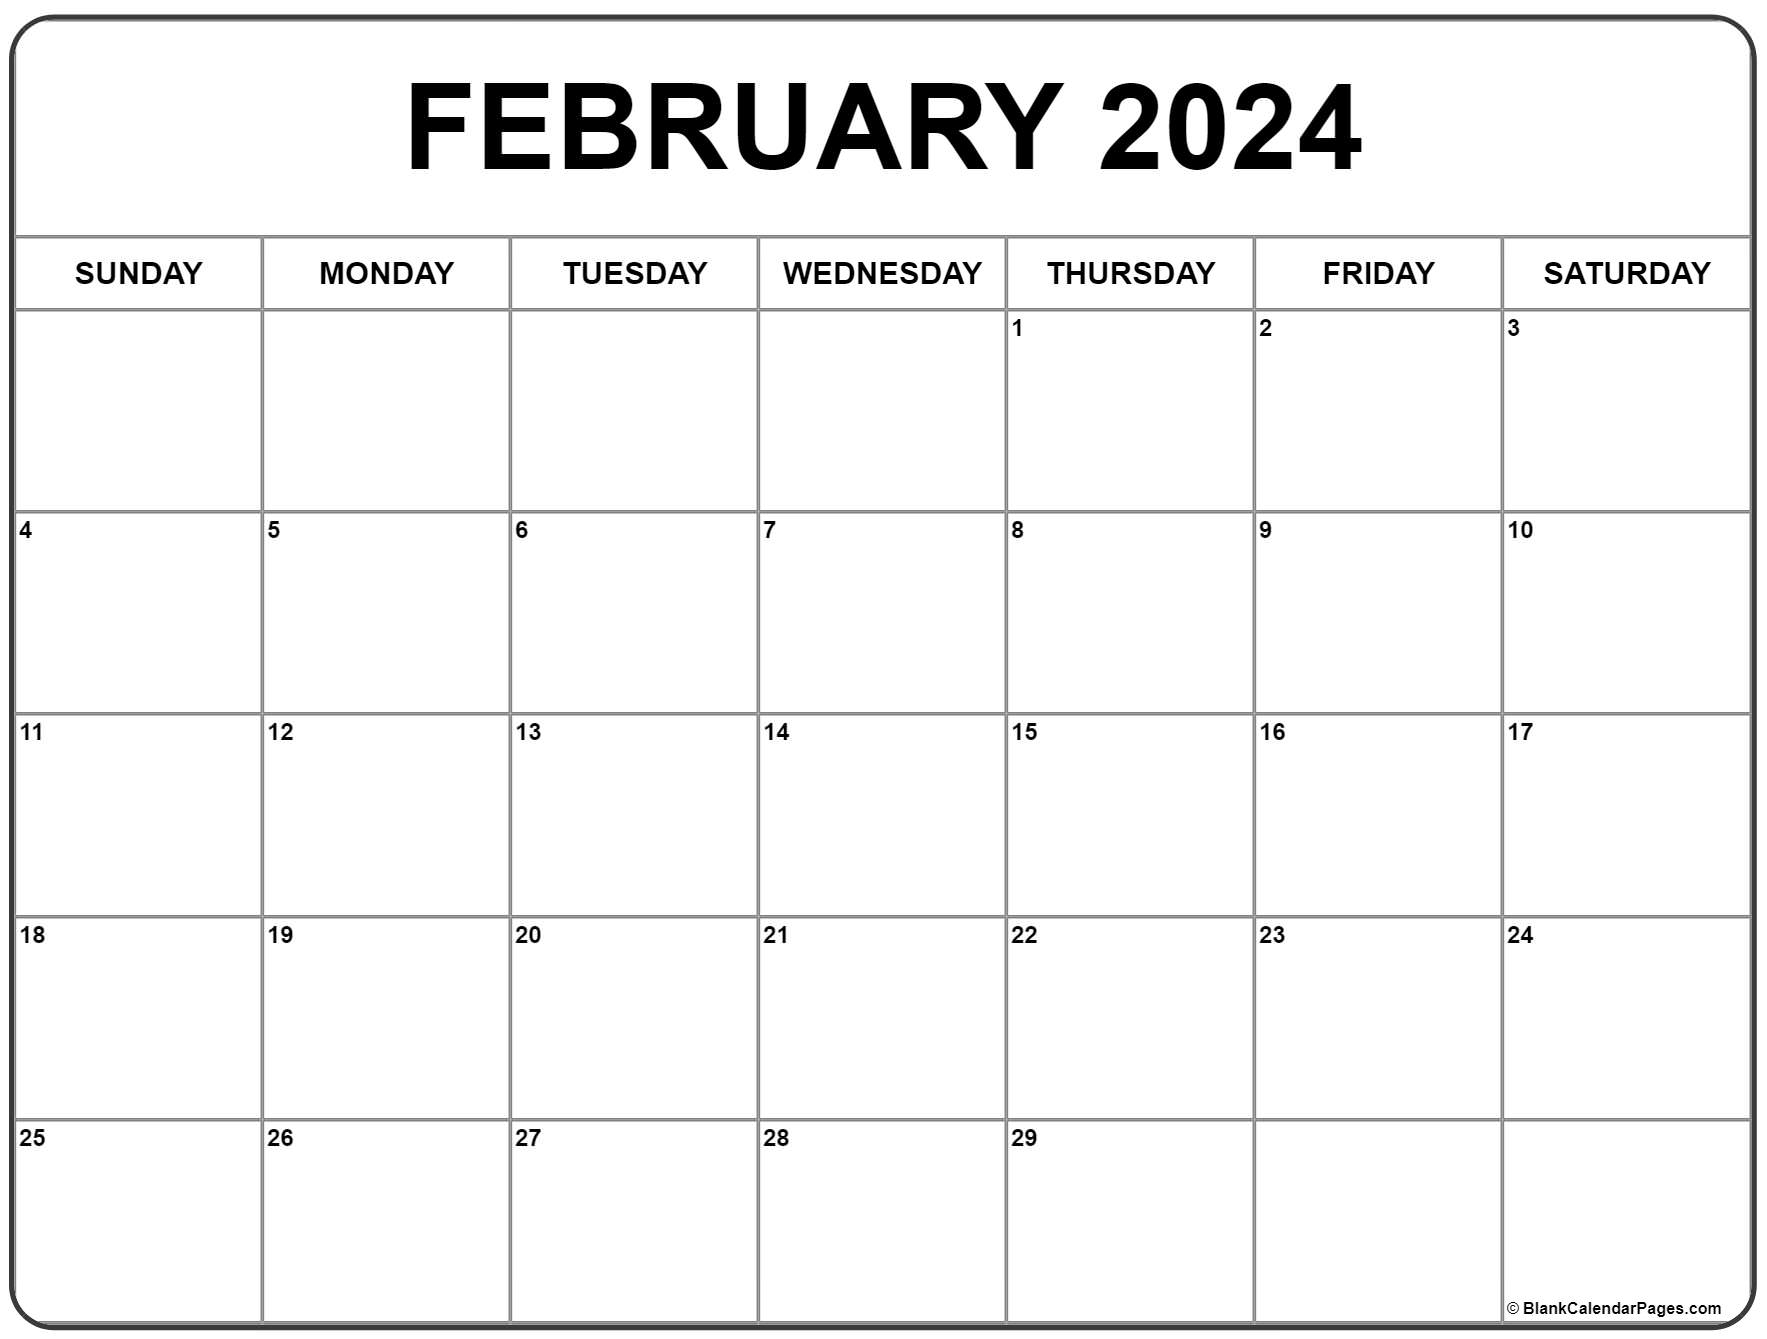 February 2024 Calendar | Free Printable Calendar for Calendar 2024 Printable February